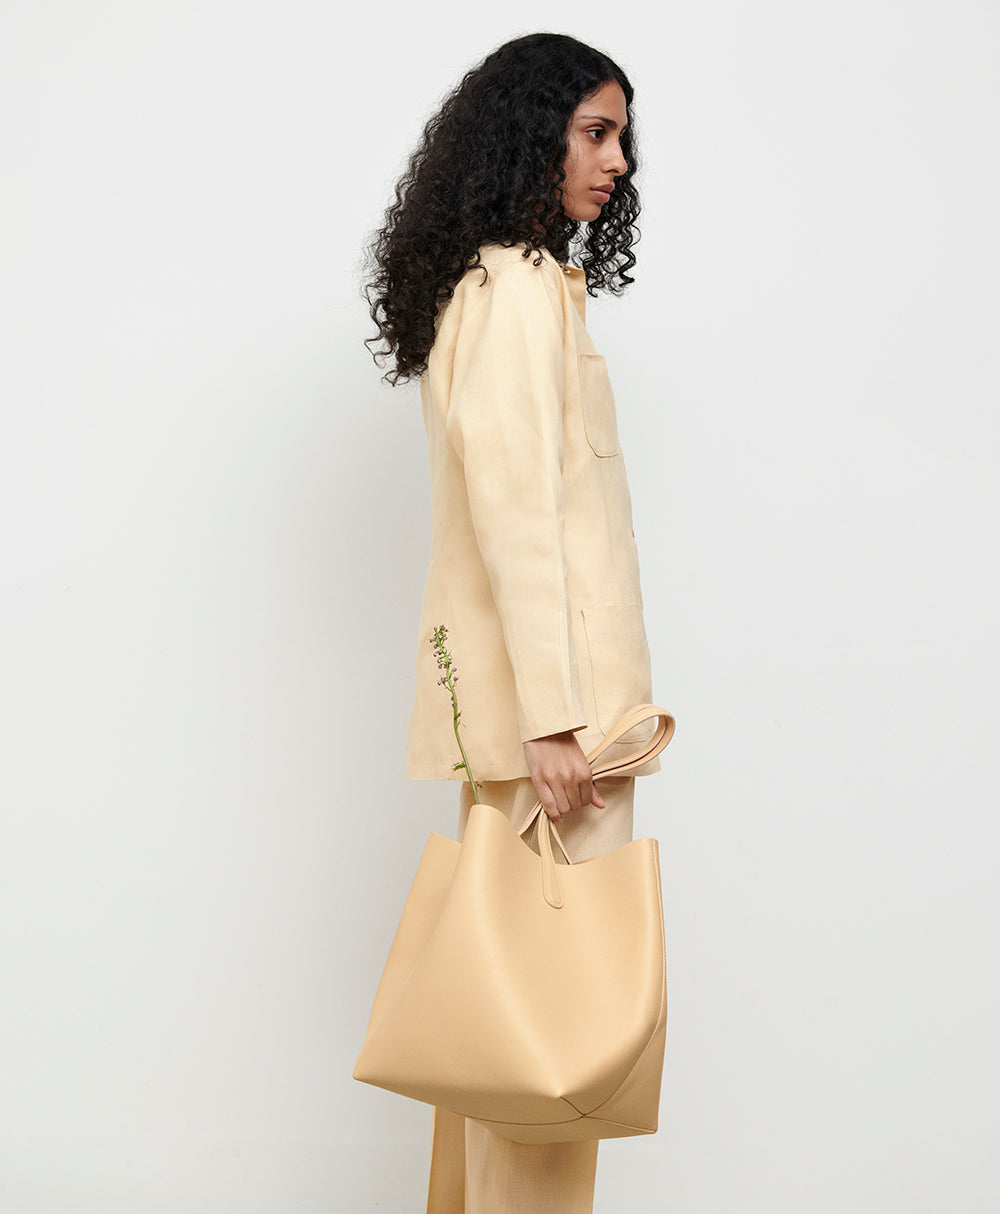 Mansur Gavriel Everyday Soft Leather Tote Bag